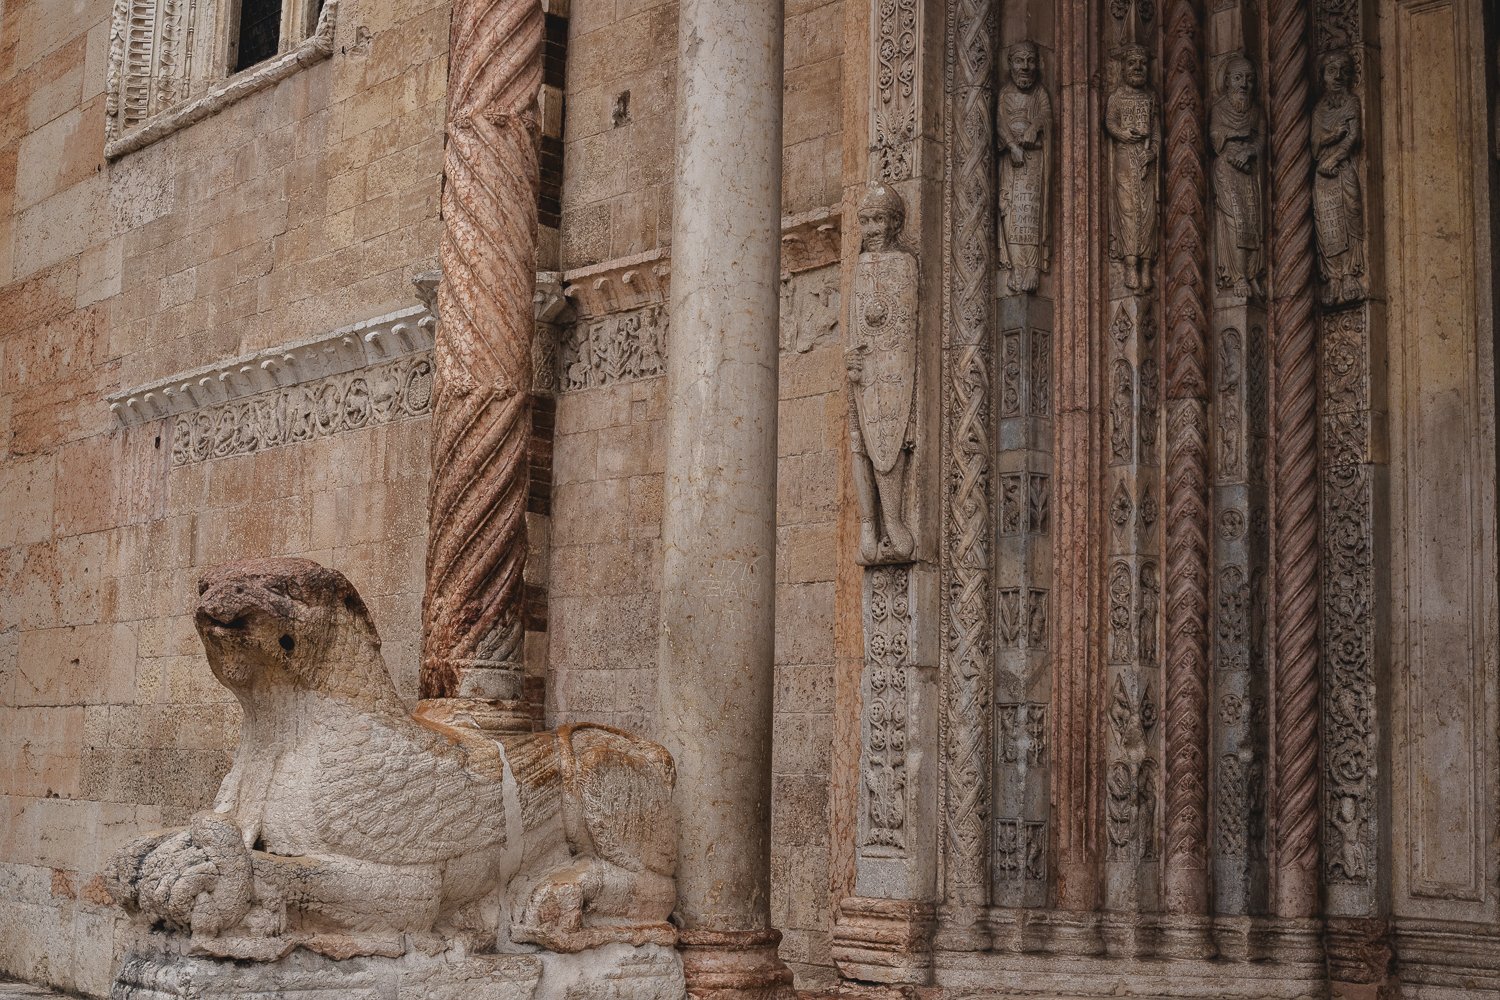 Une statue de sphynx (je pense) soutient une colonne sur la façade de la cathédrale de Vérone